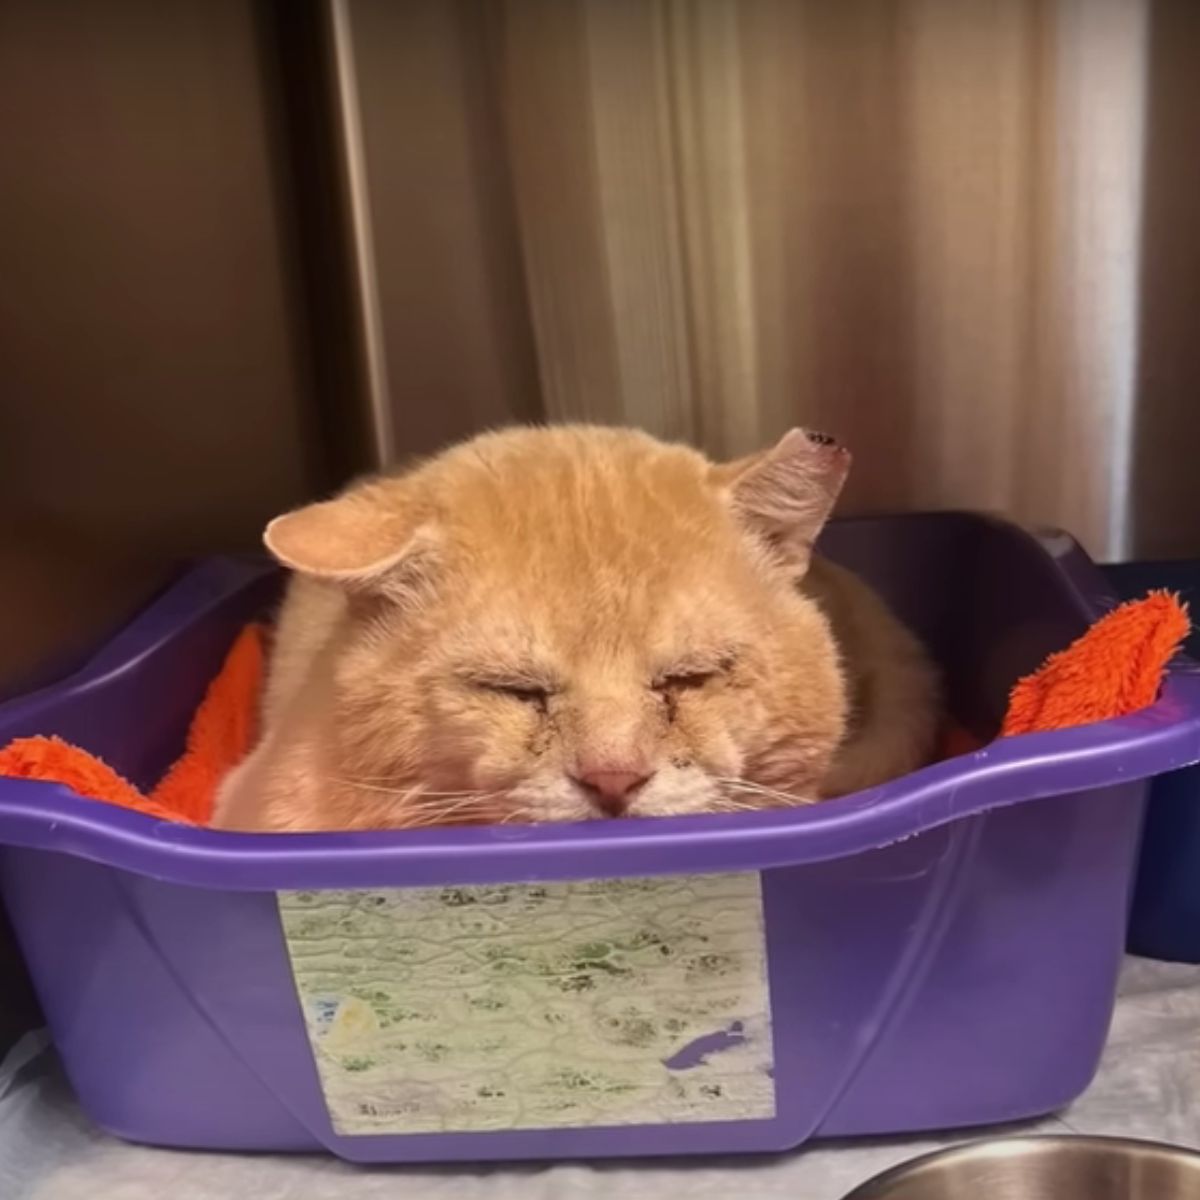 cat lying in purple tray